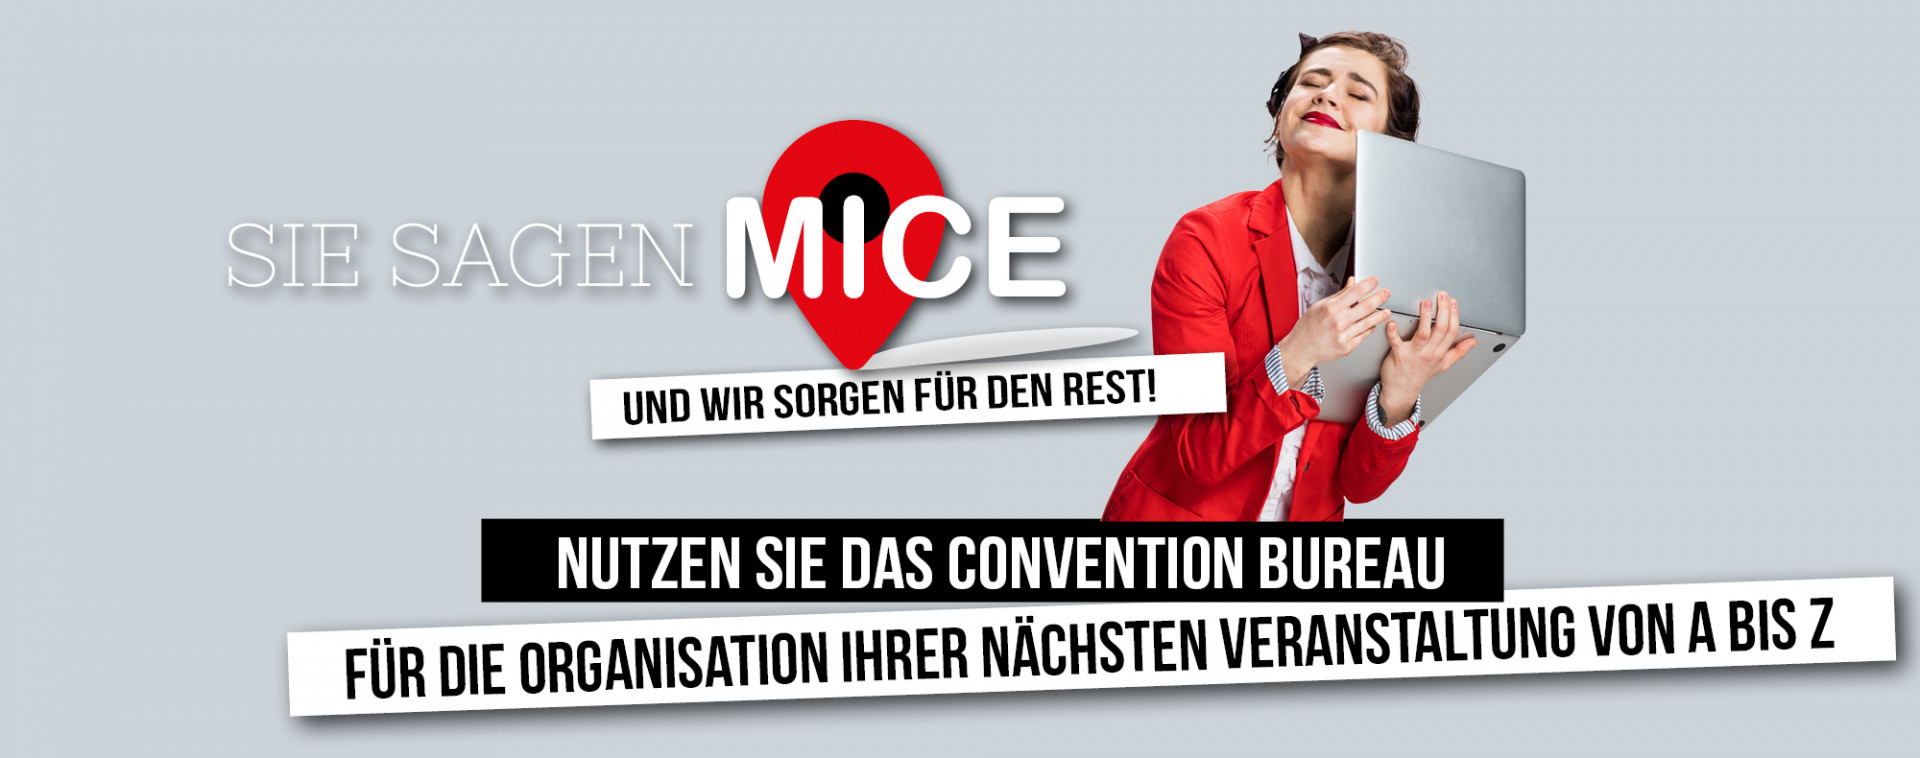 Sie Sagen MICE - Ihre Veranstaltung von A bis Z - Convention Bureau ▪️ MICE Liège-Spa | © Getty Images